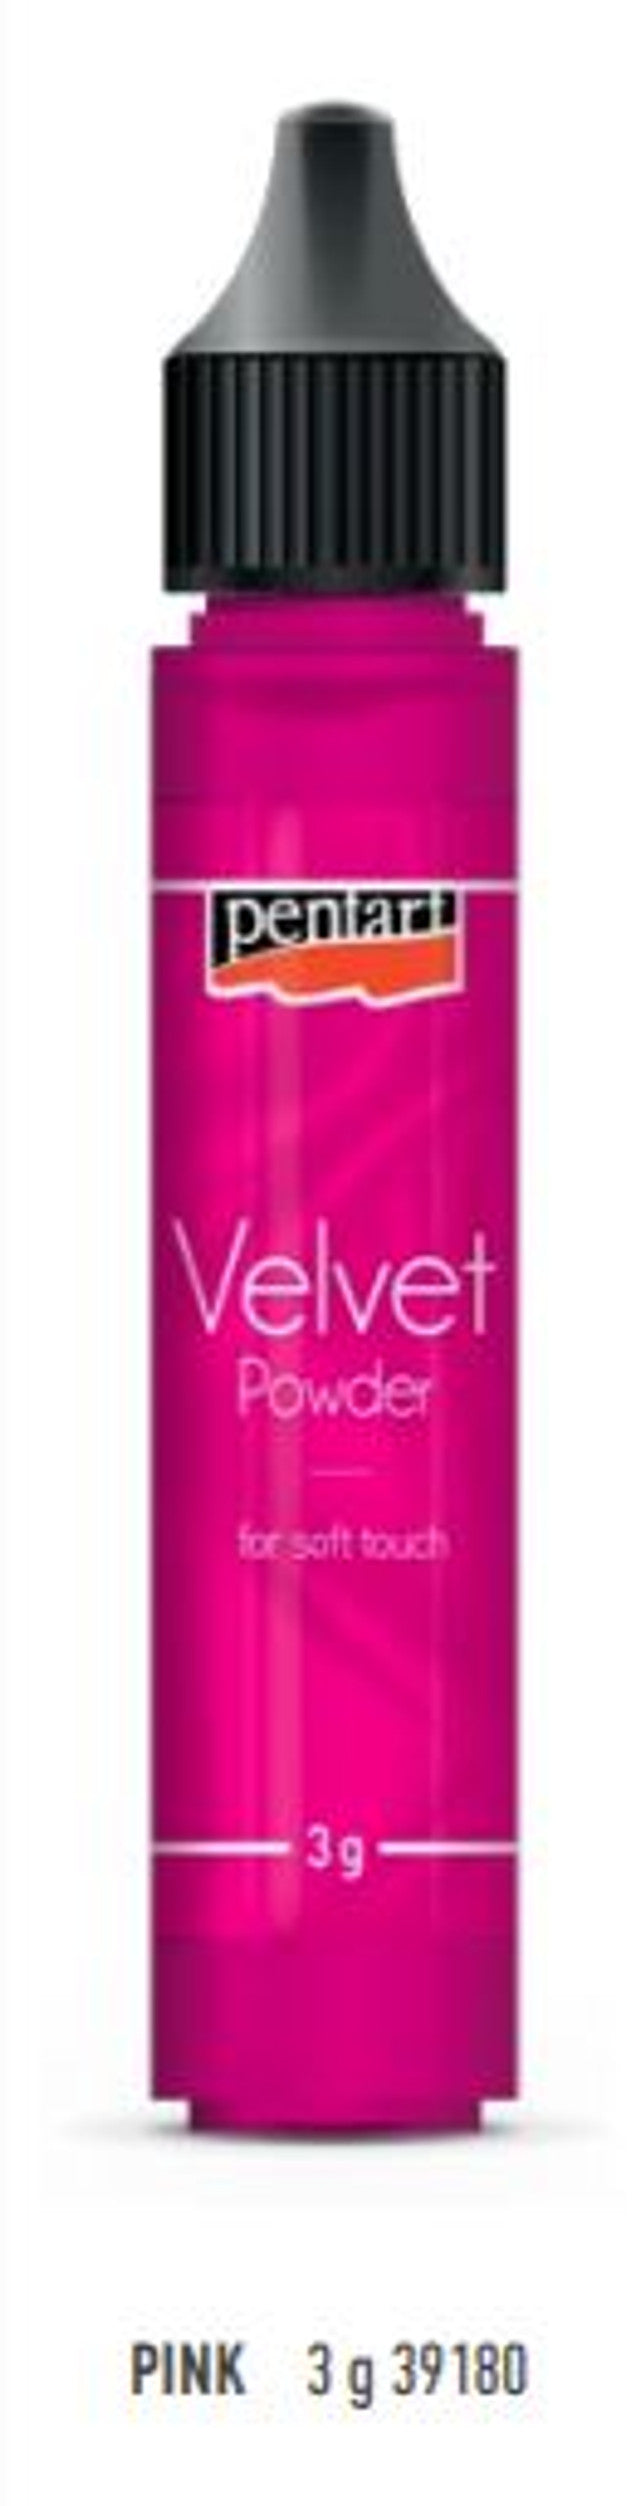 Velvet Powder  - Variety of colors in  2 sizes